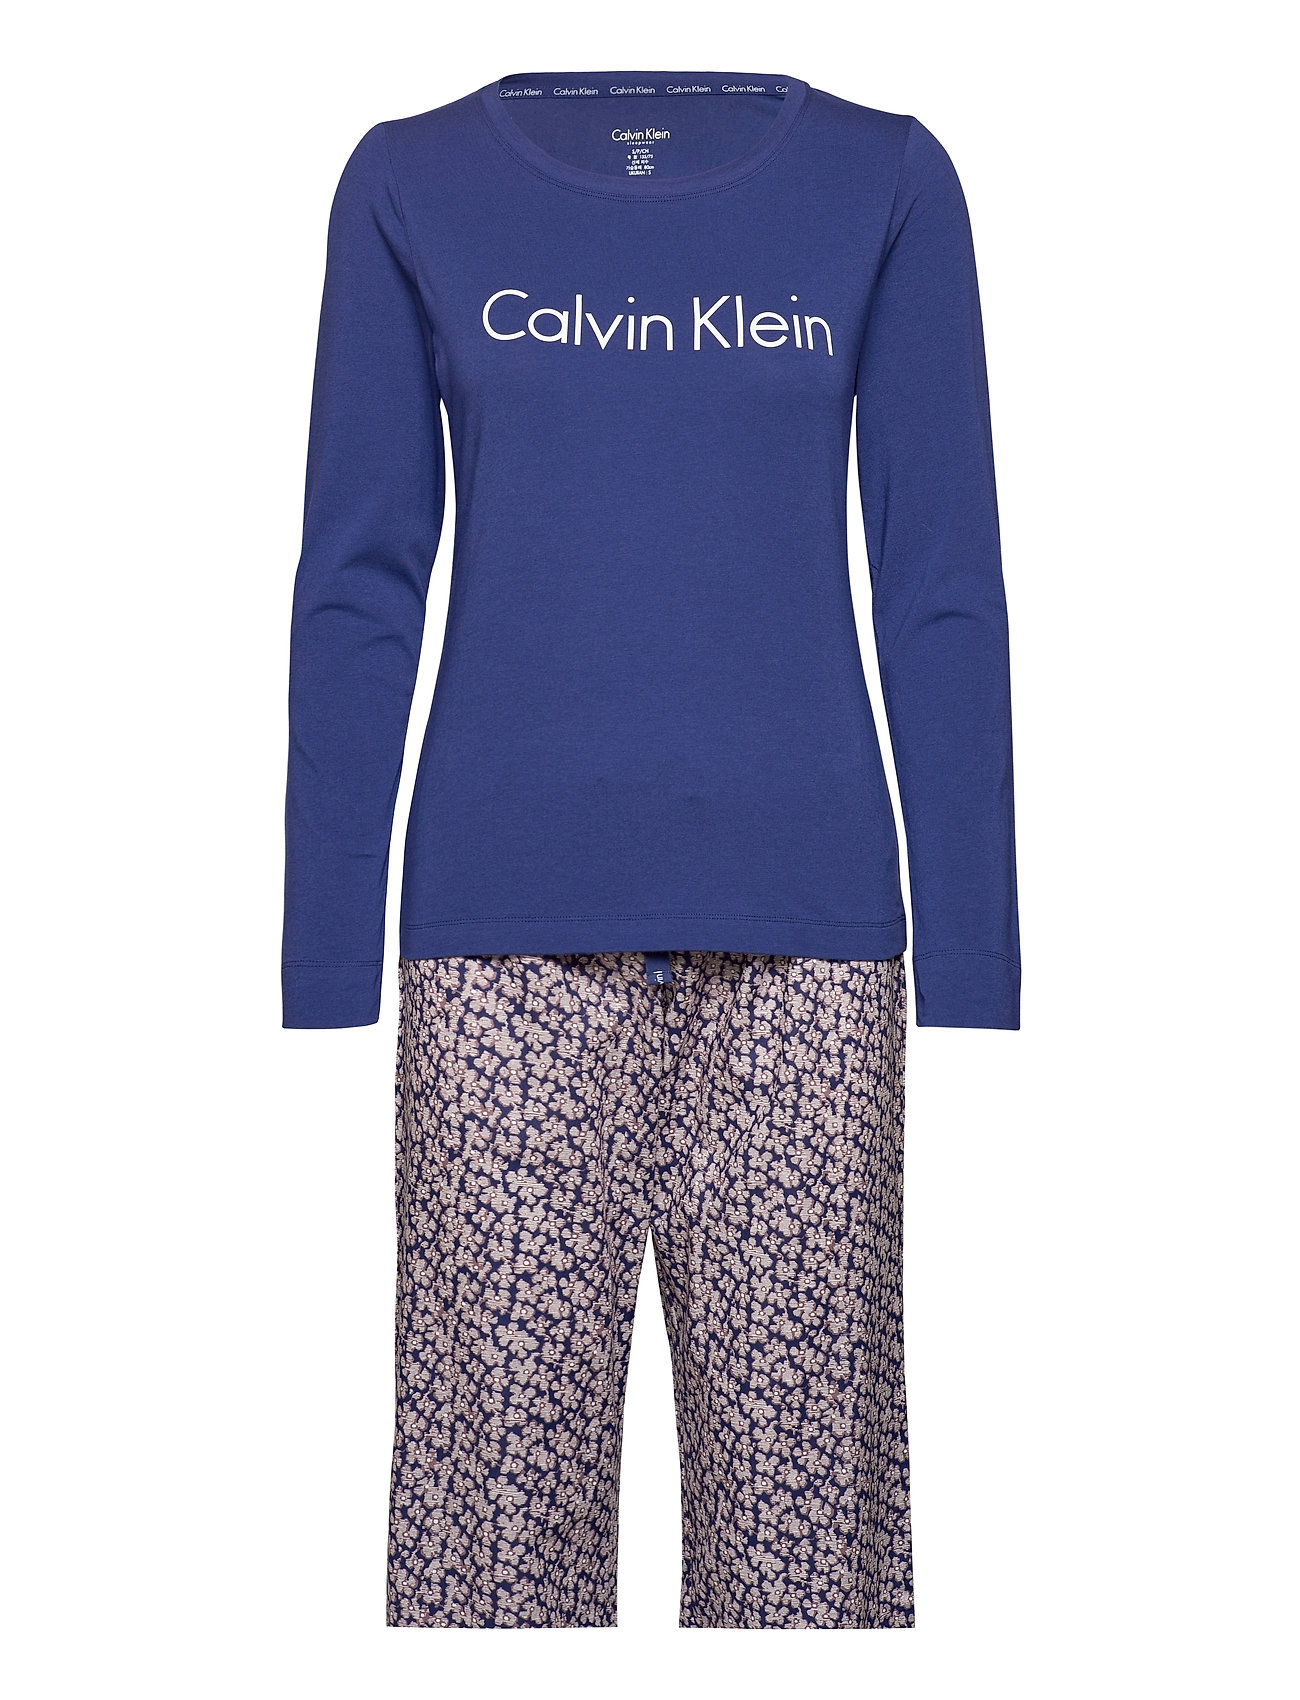 Calvin Klein pyjamas L/S Pant Pyjamas Nattøj Blå Klein til dame i SPACE BLUE/CRINKLE FLORAL - Pashion.dk